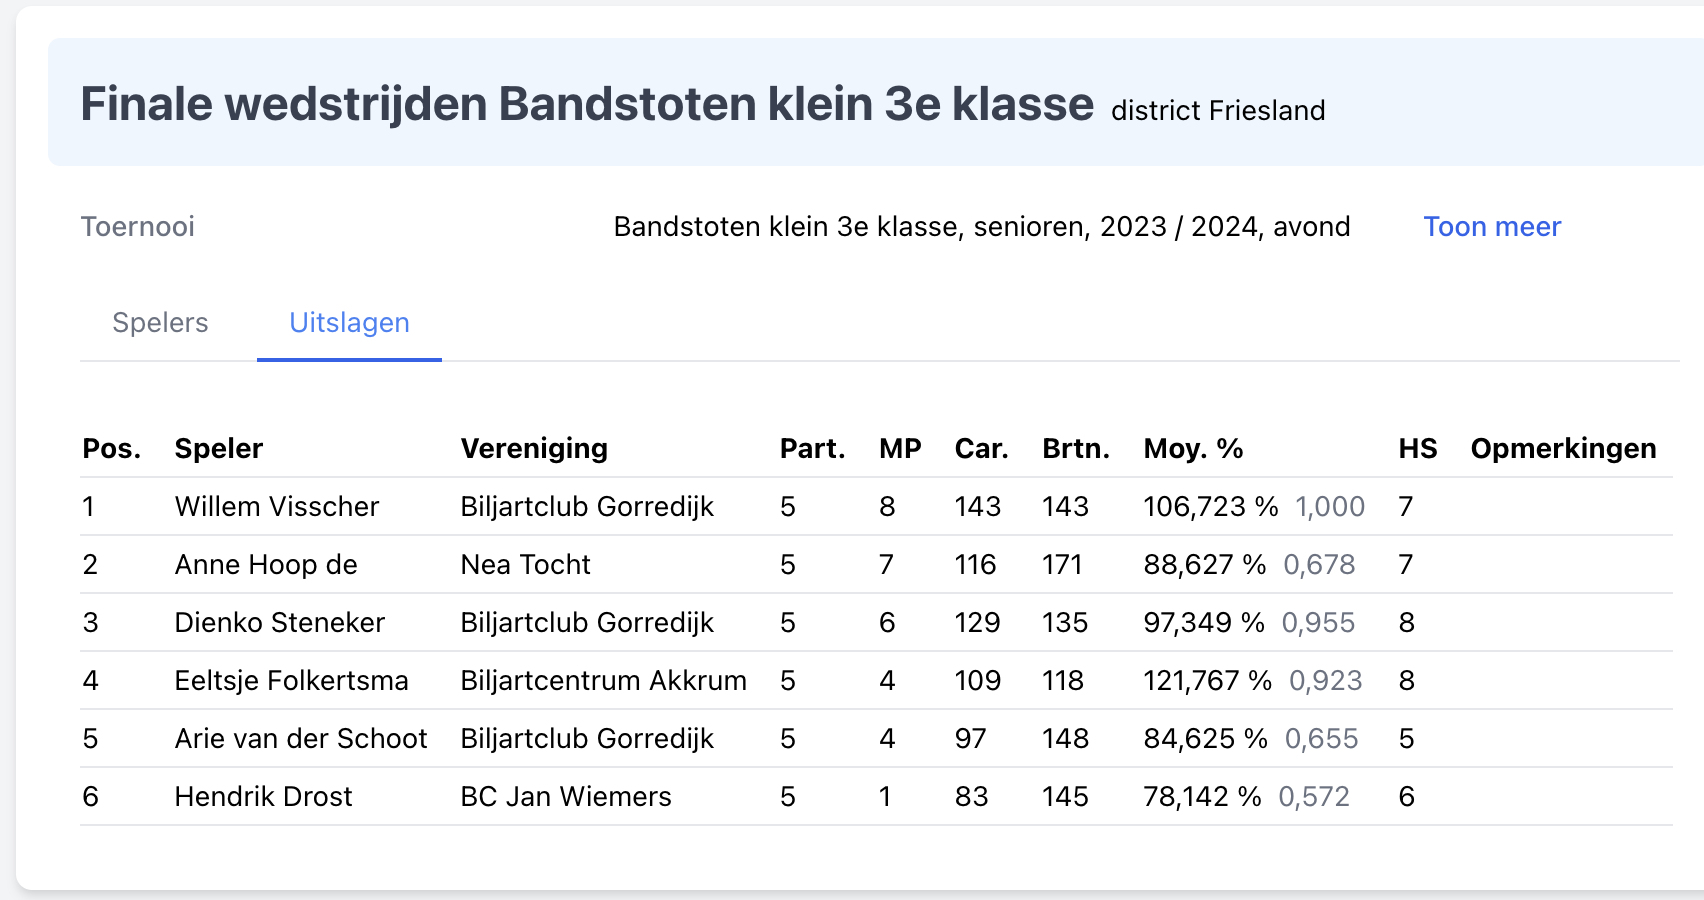 Willem Visscher Fries kampioen bandstoten 3e klasse